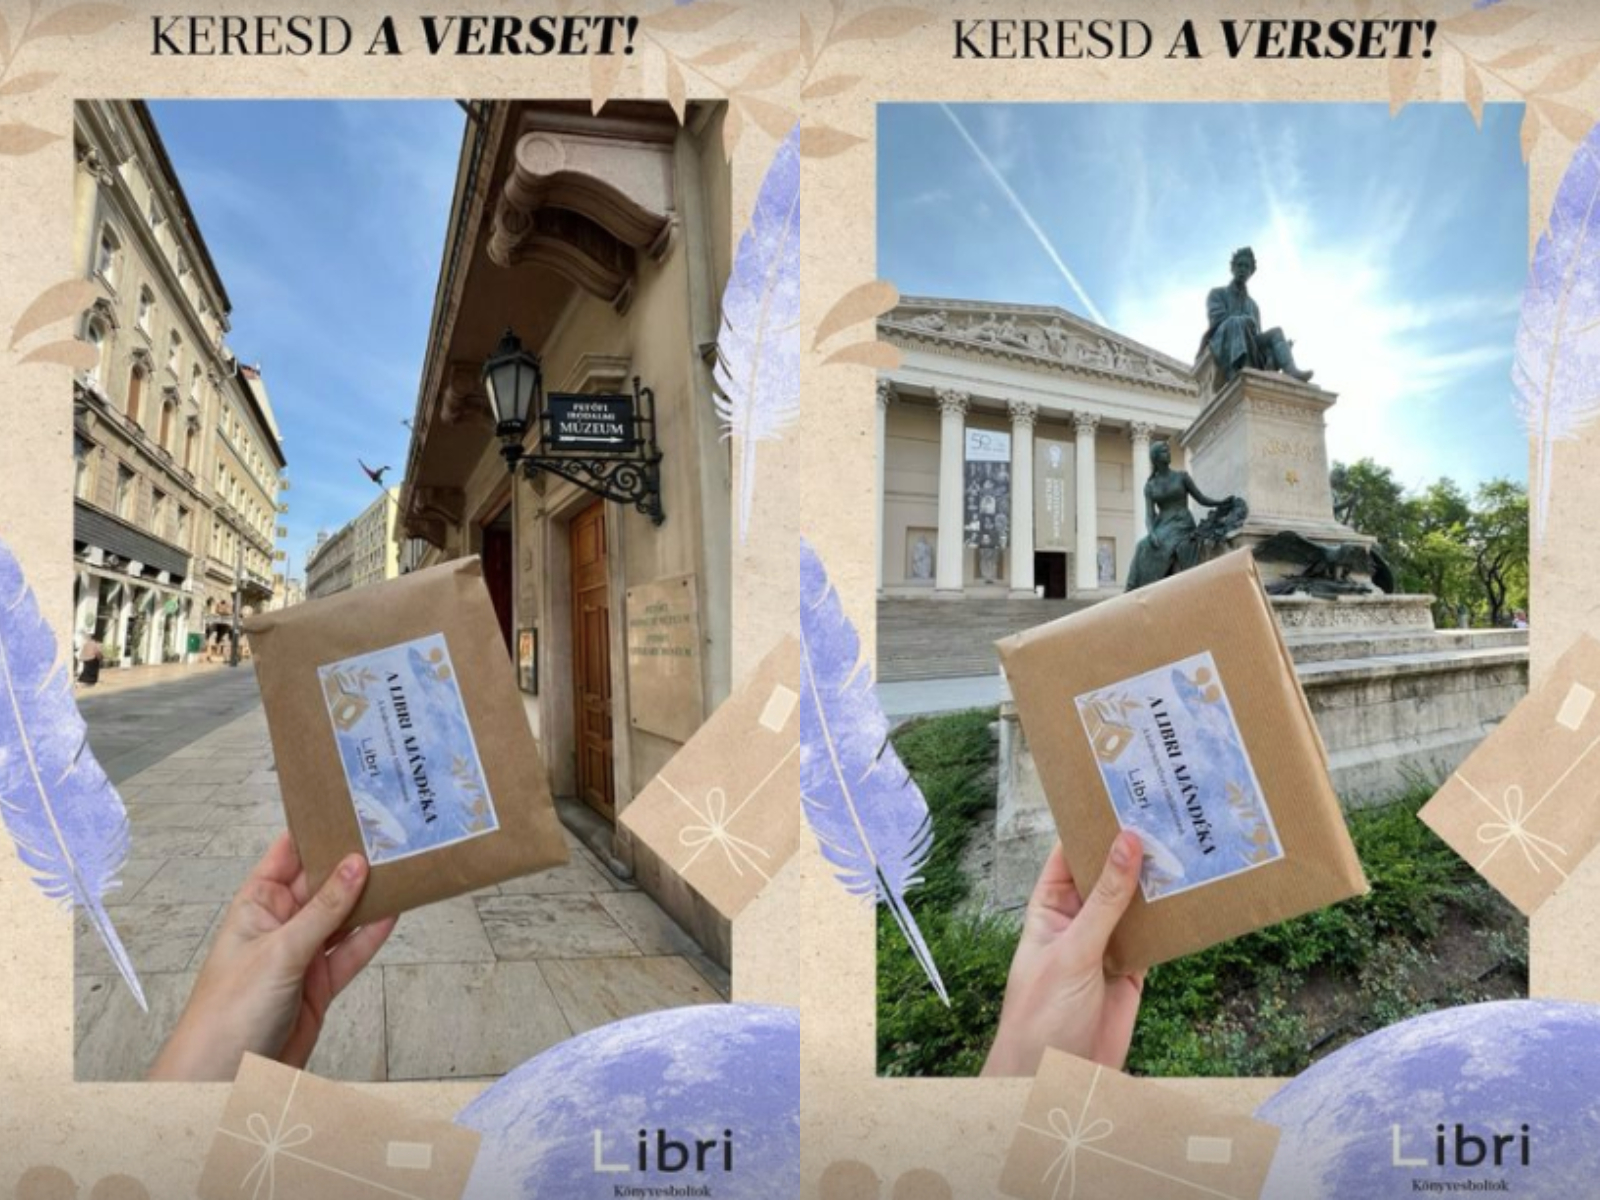 Budapesti köztereken rejti el kortárs lírikusok köteteit a Libri a magyar költészet napja alkalmából